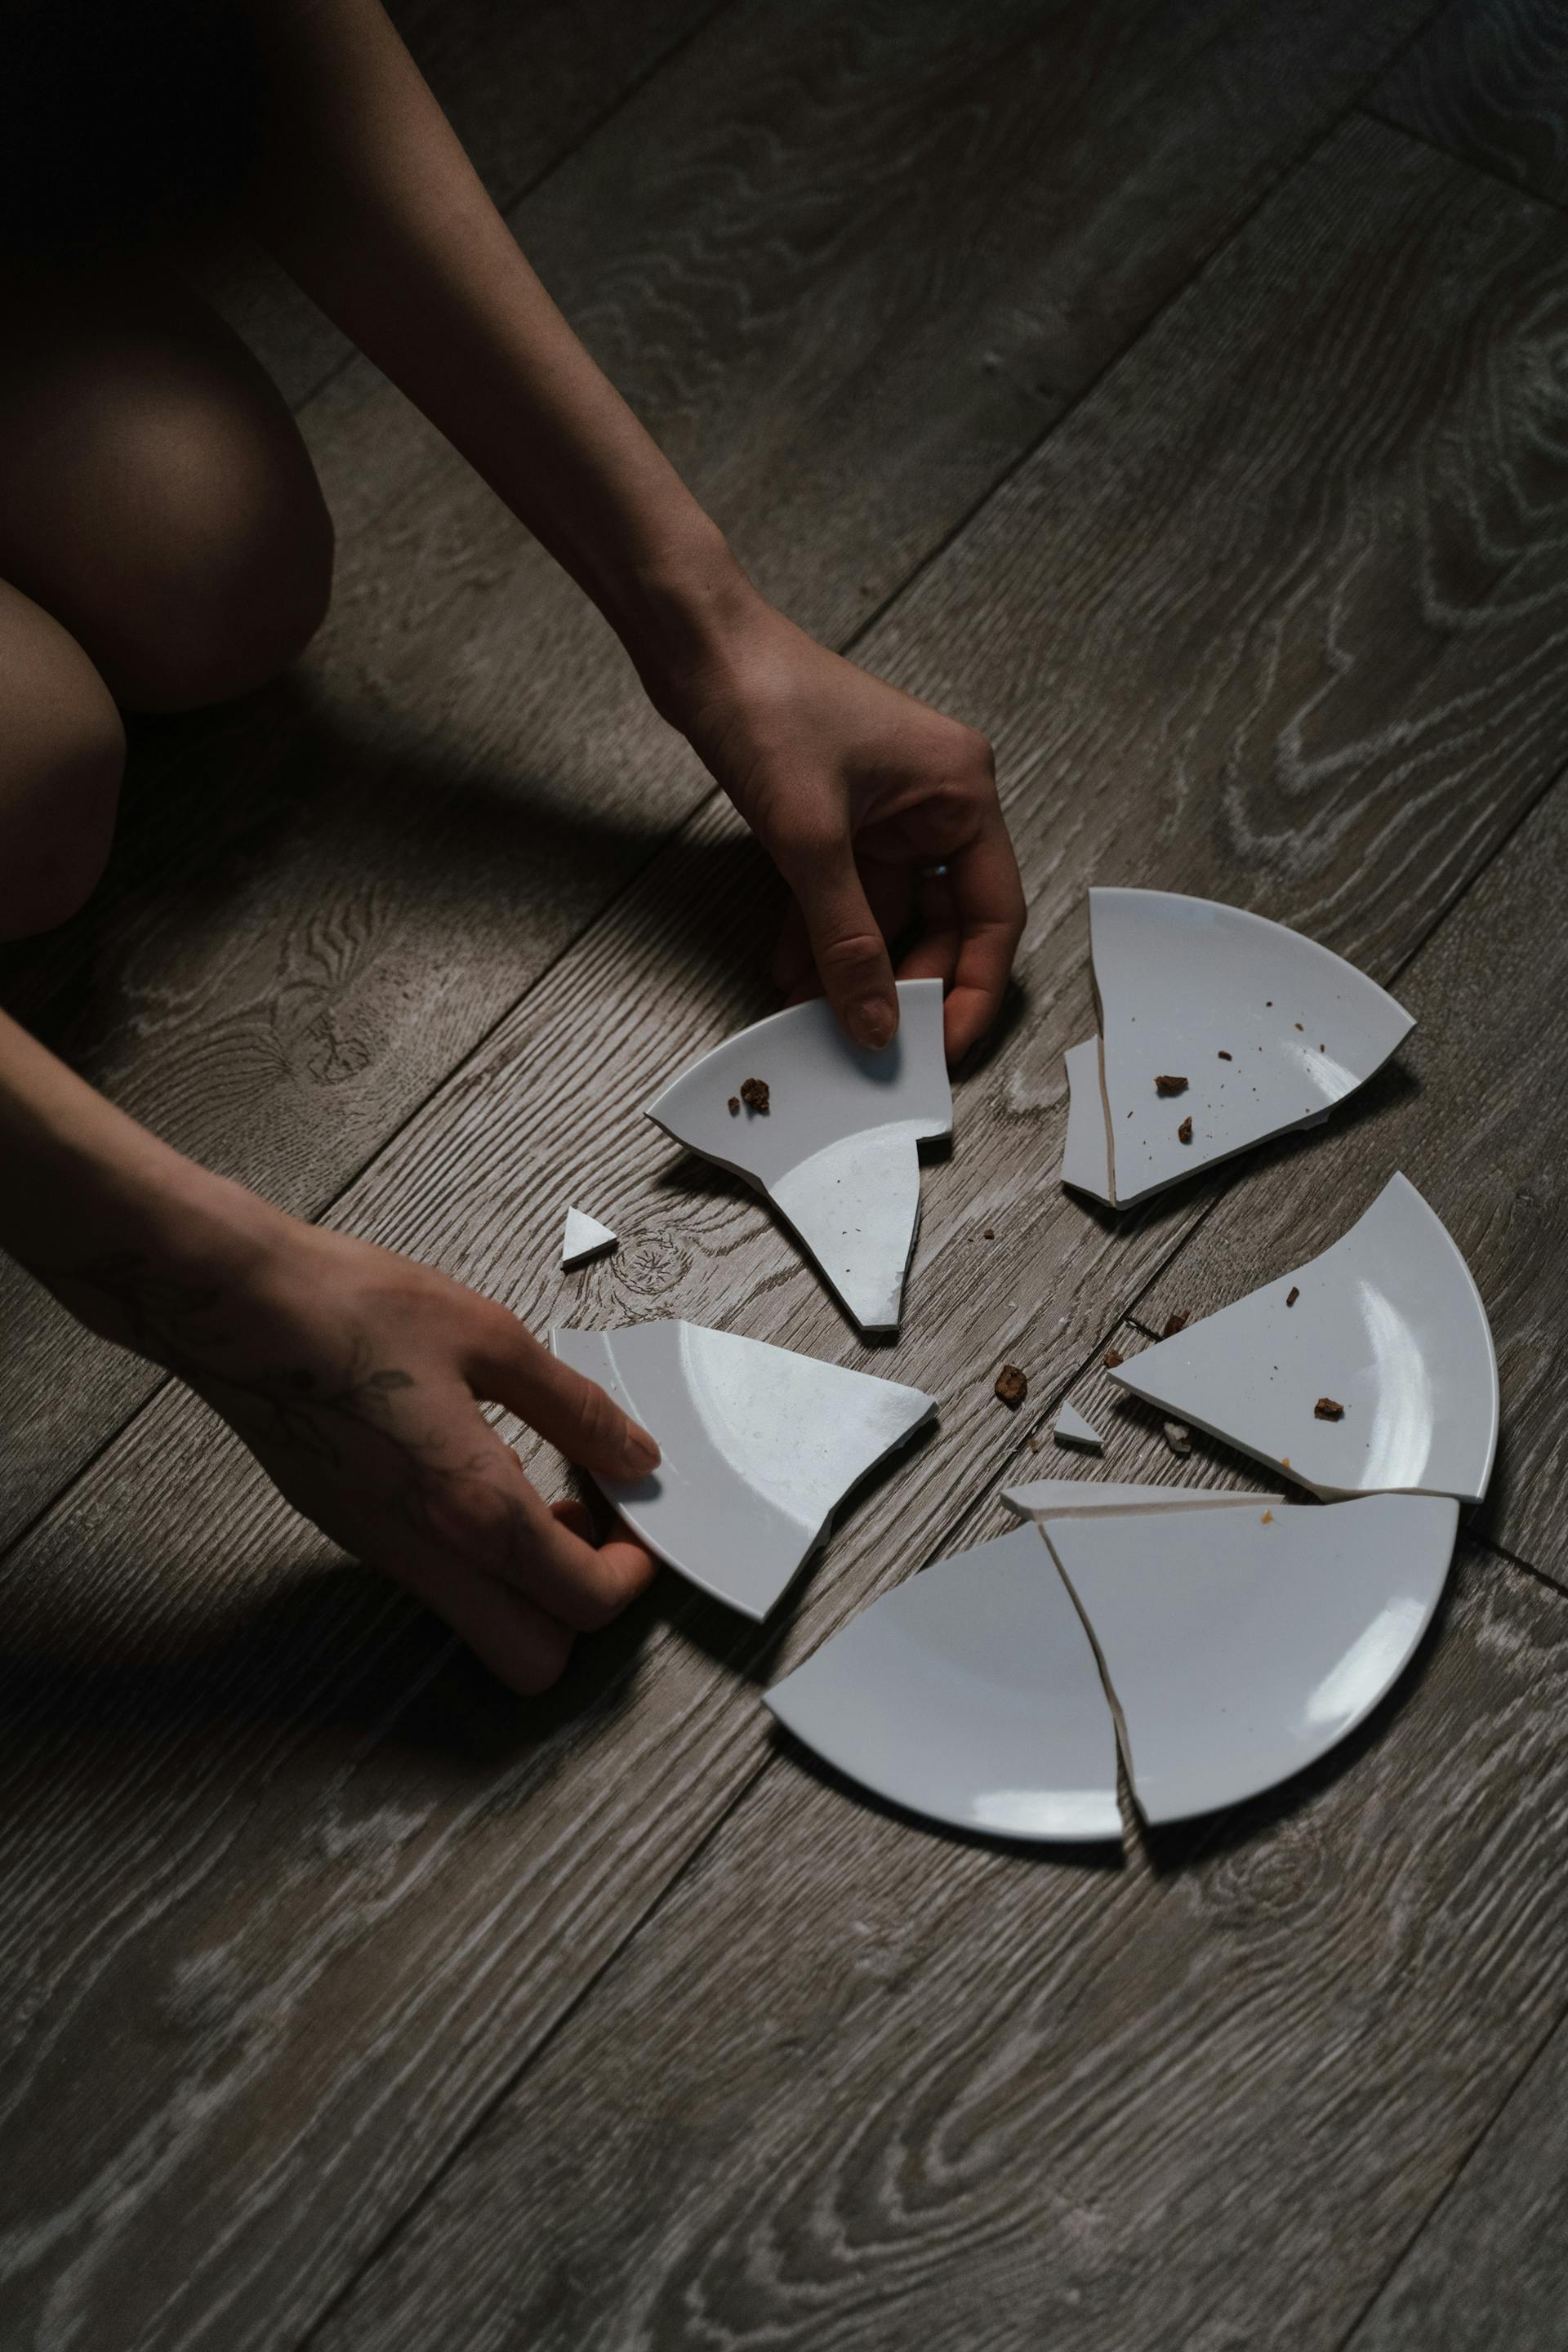 A broken plate on the floor | Source: Pexels